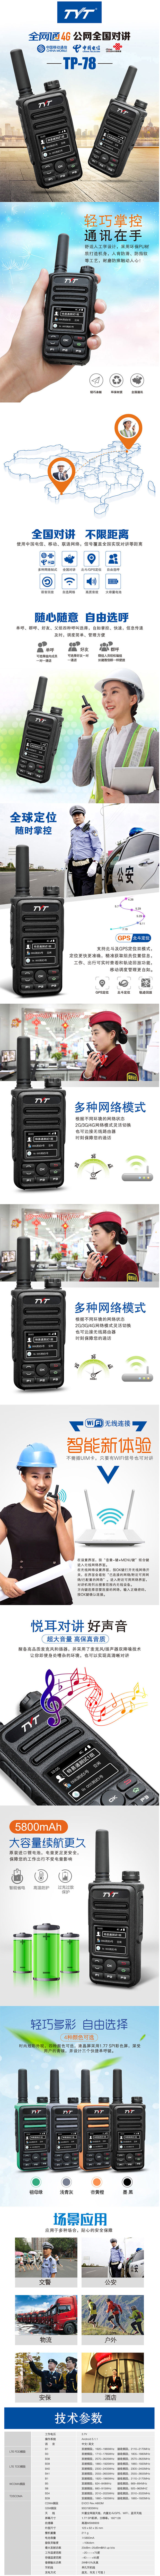 特易通TP-78 4G全网通对讲机